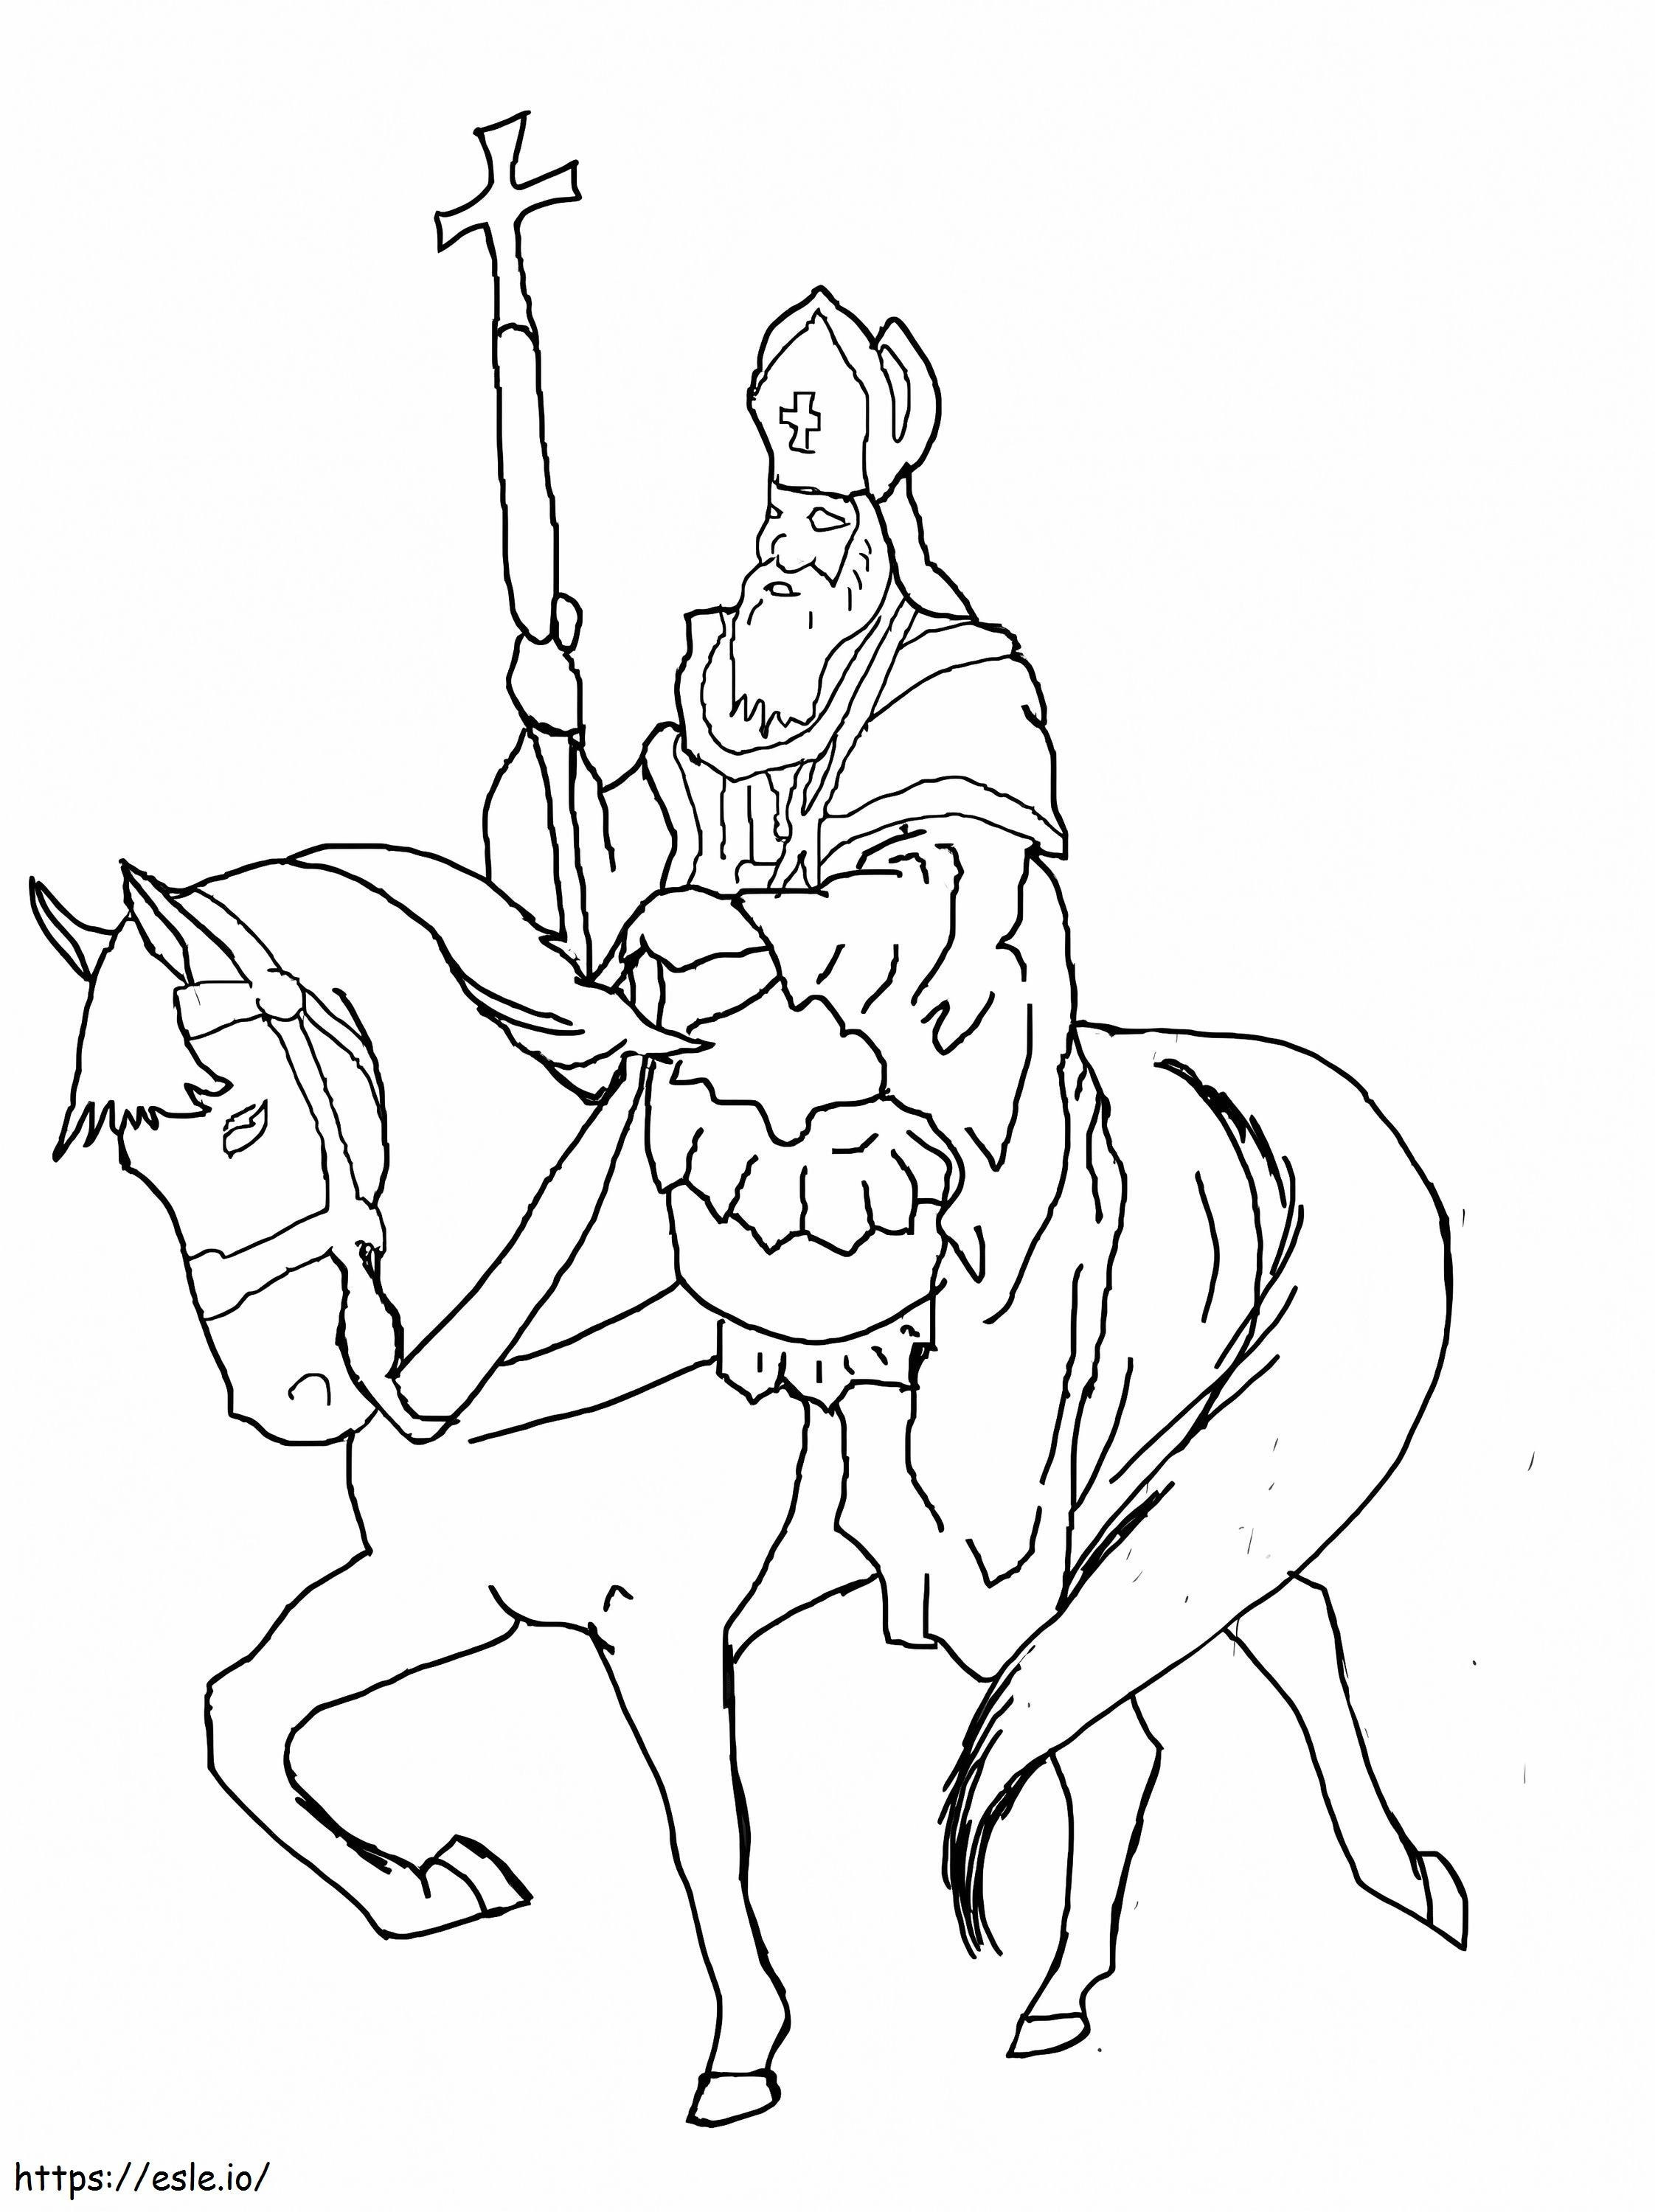 Saint nicholas riding horse coloring page